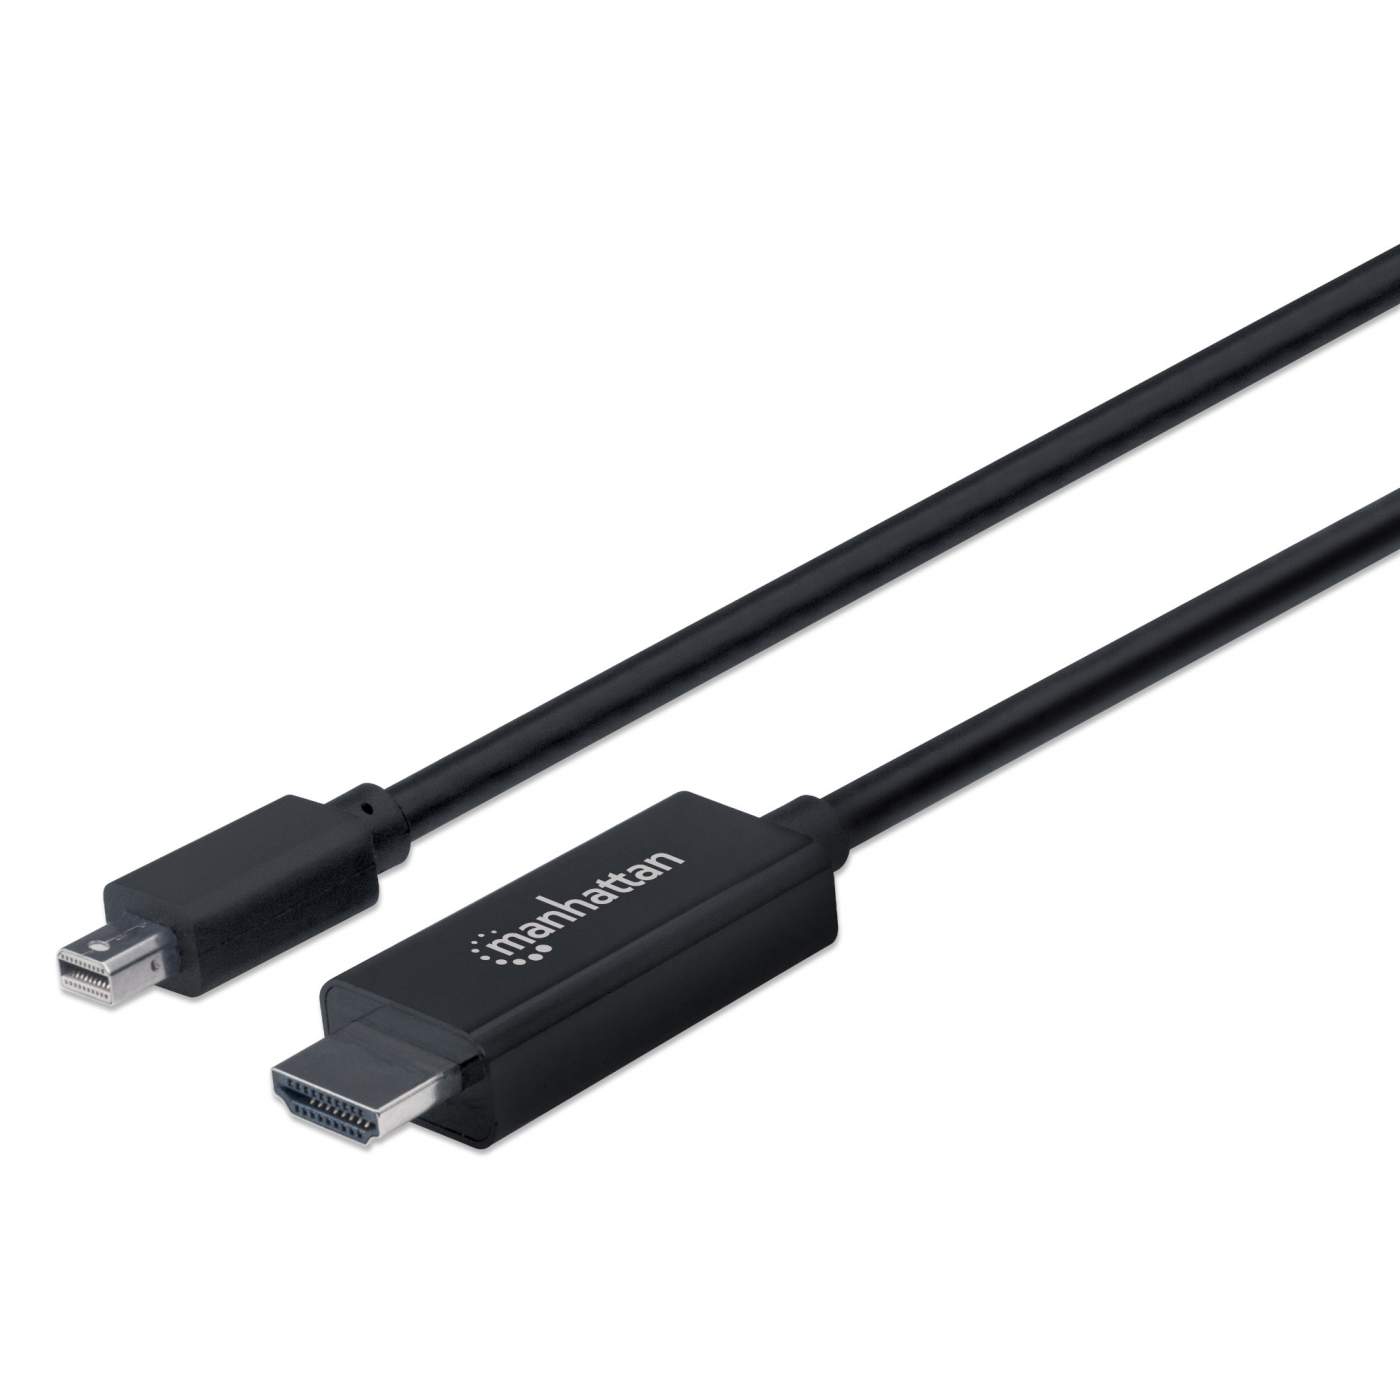 4K HDMI to 4K HDMI Cable (120in/305cm) — SmallHD